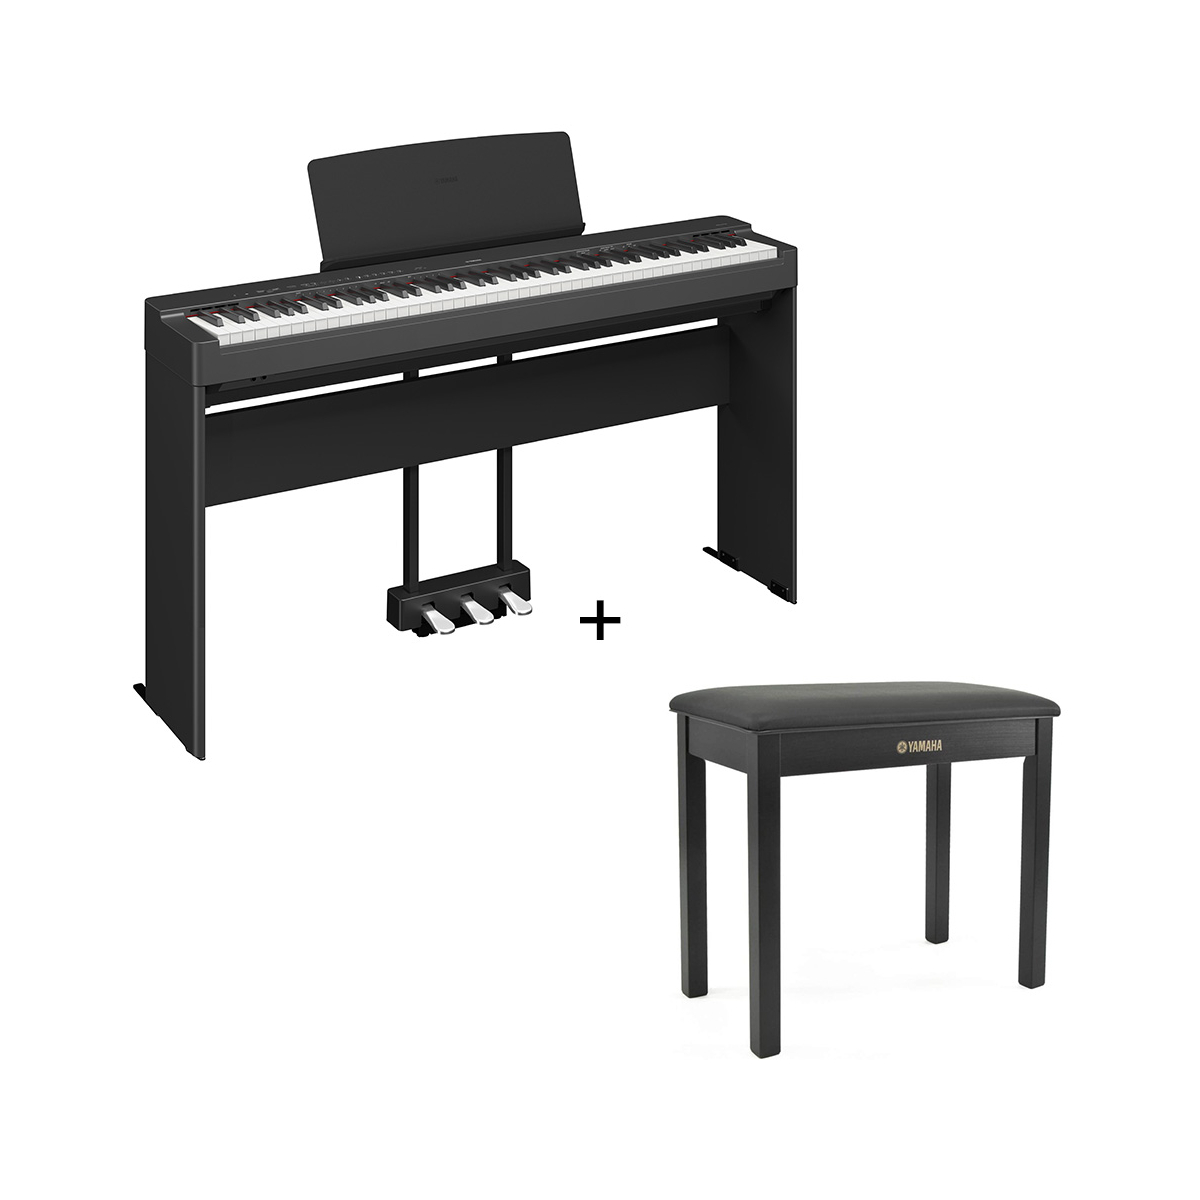 Support de partition de musique pour clavier, piano électronique